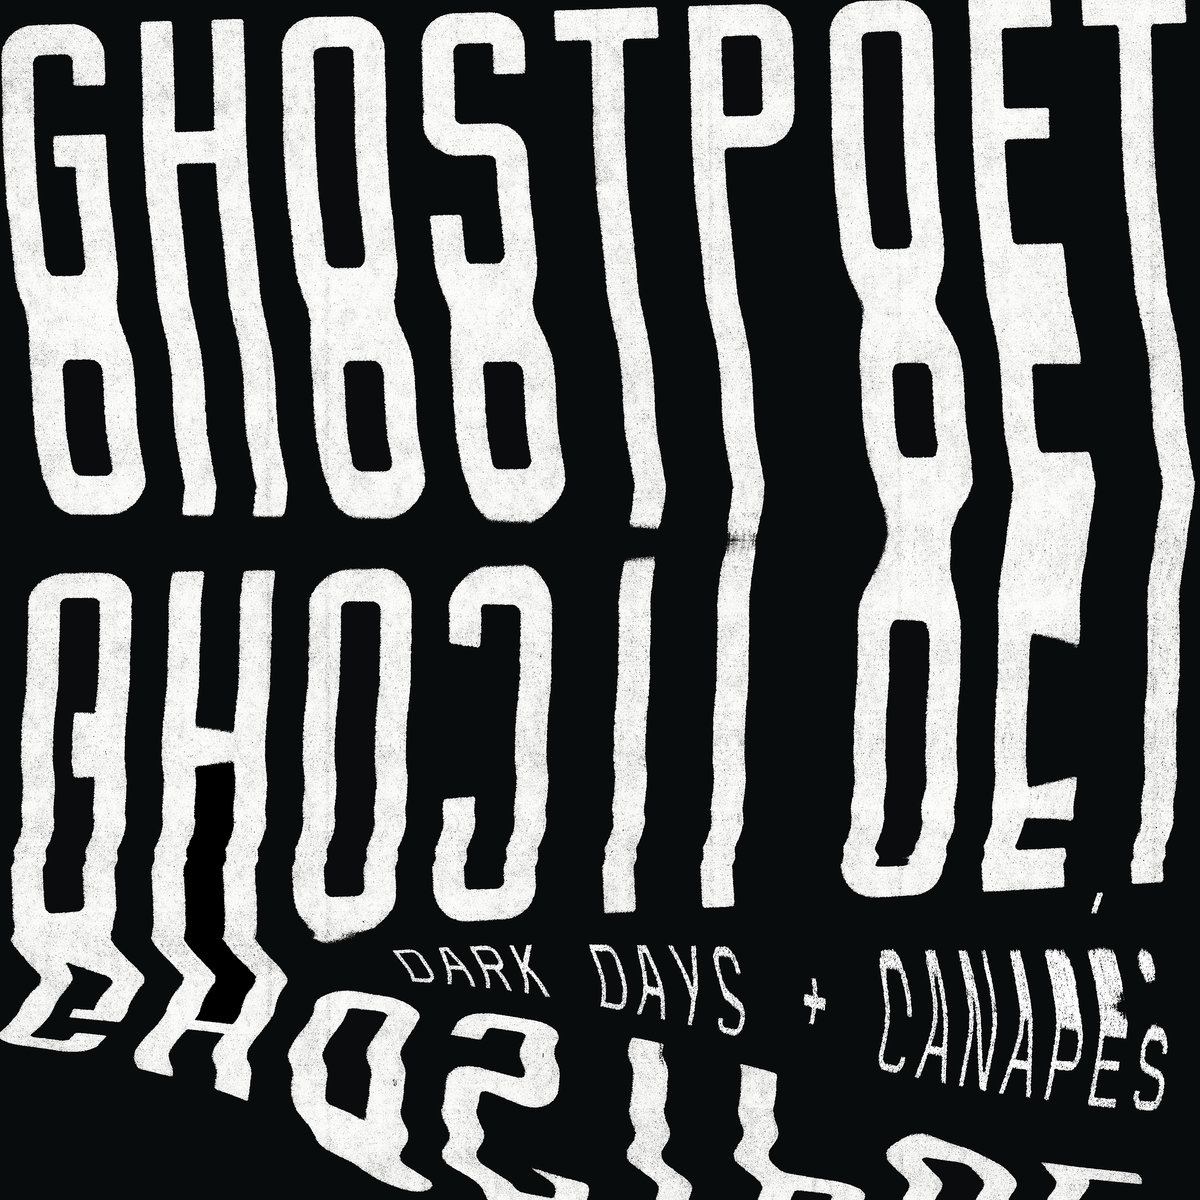 Là tout de suite, j'écoute - Page 27 Ghostpoet_-_Dark_Days_and_Canapes